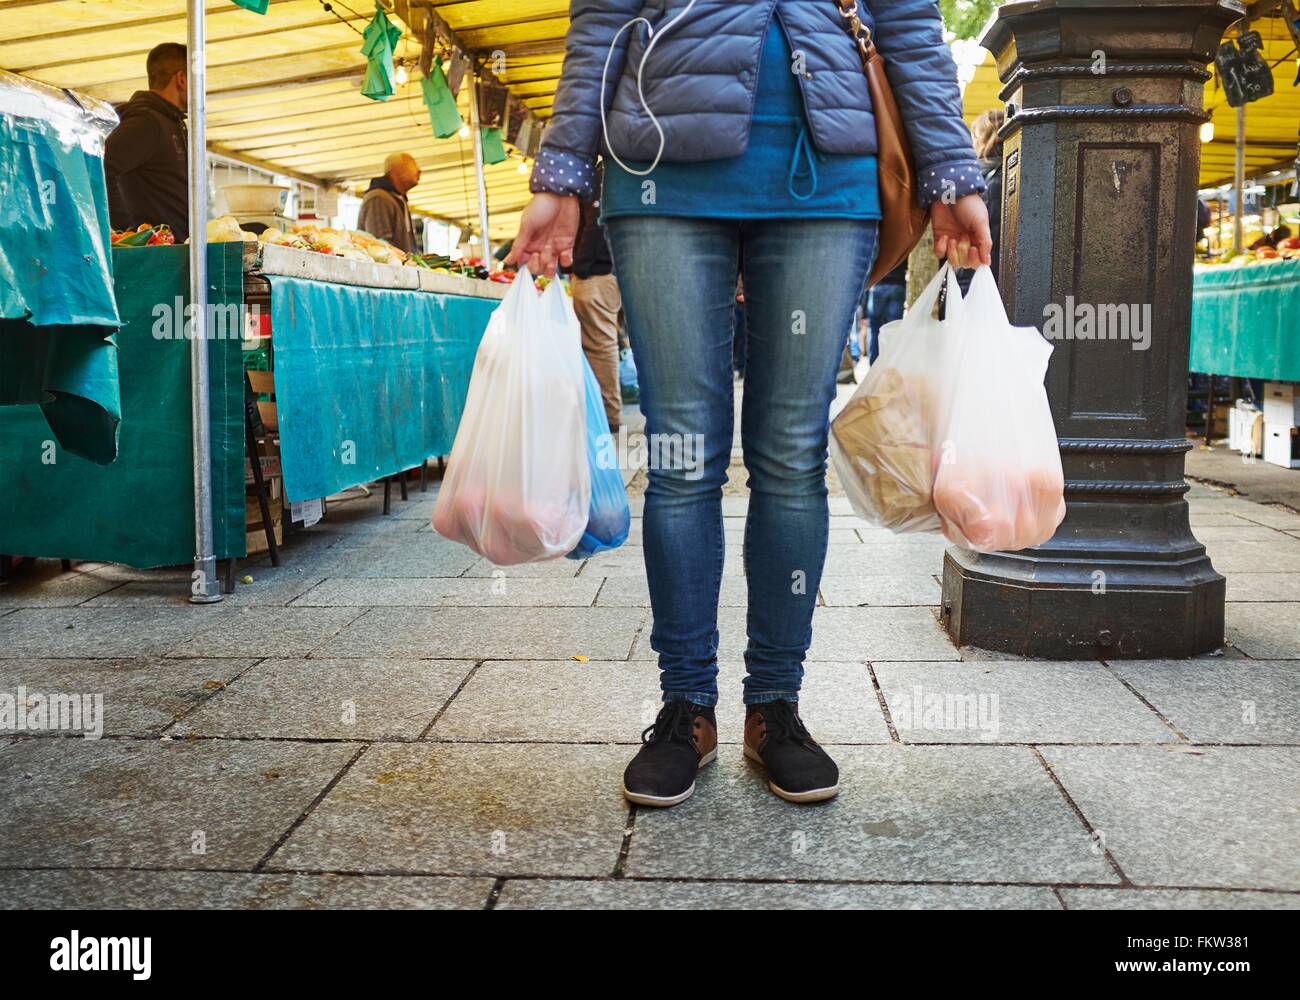 Junge Frau am Markt, Taschen von shopping, niedrigen Bereich halten Stockfoto